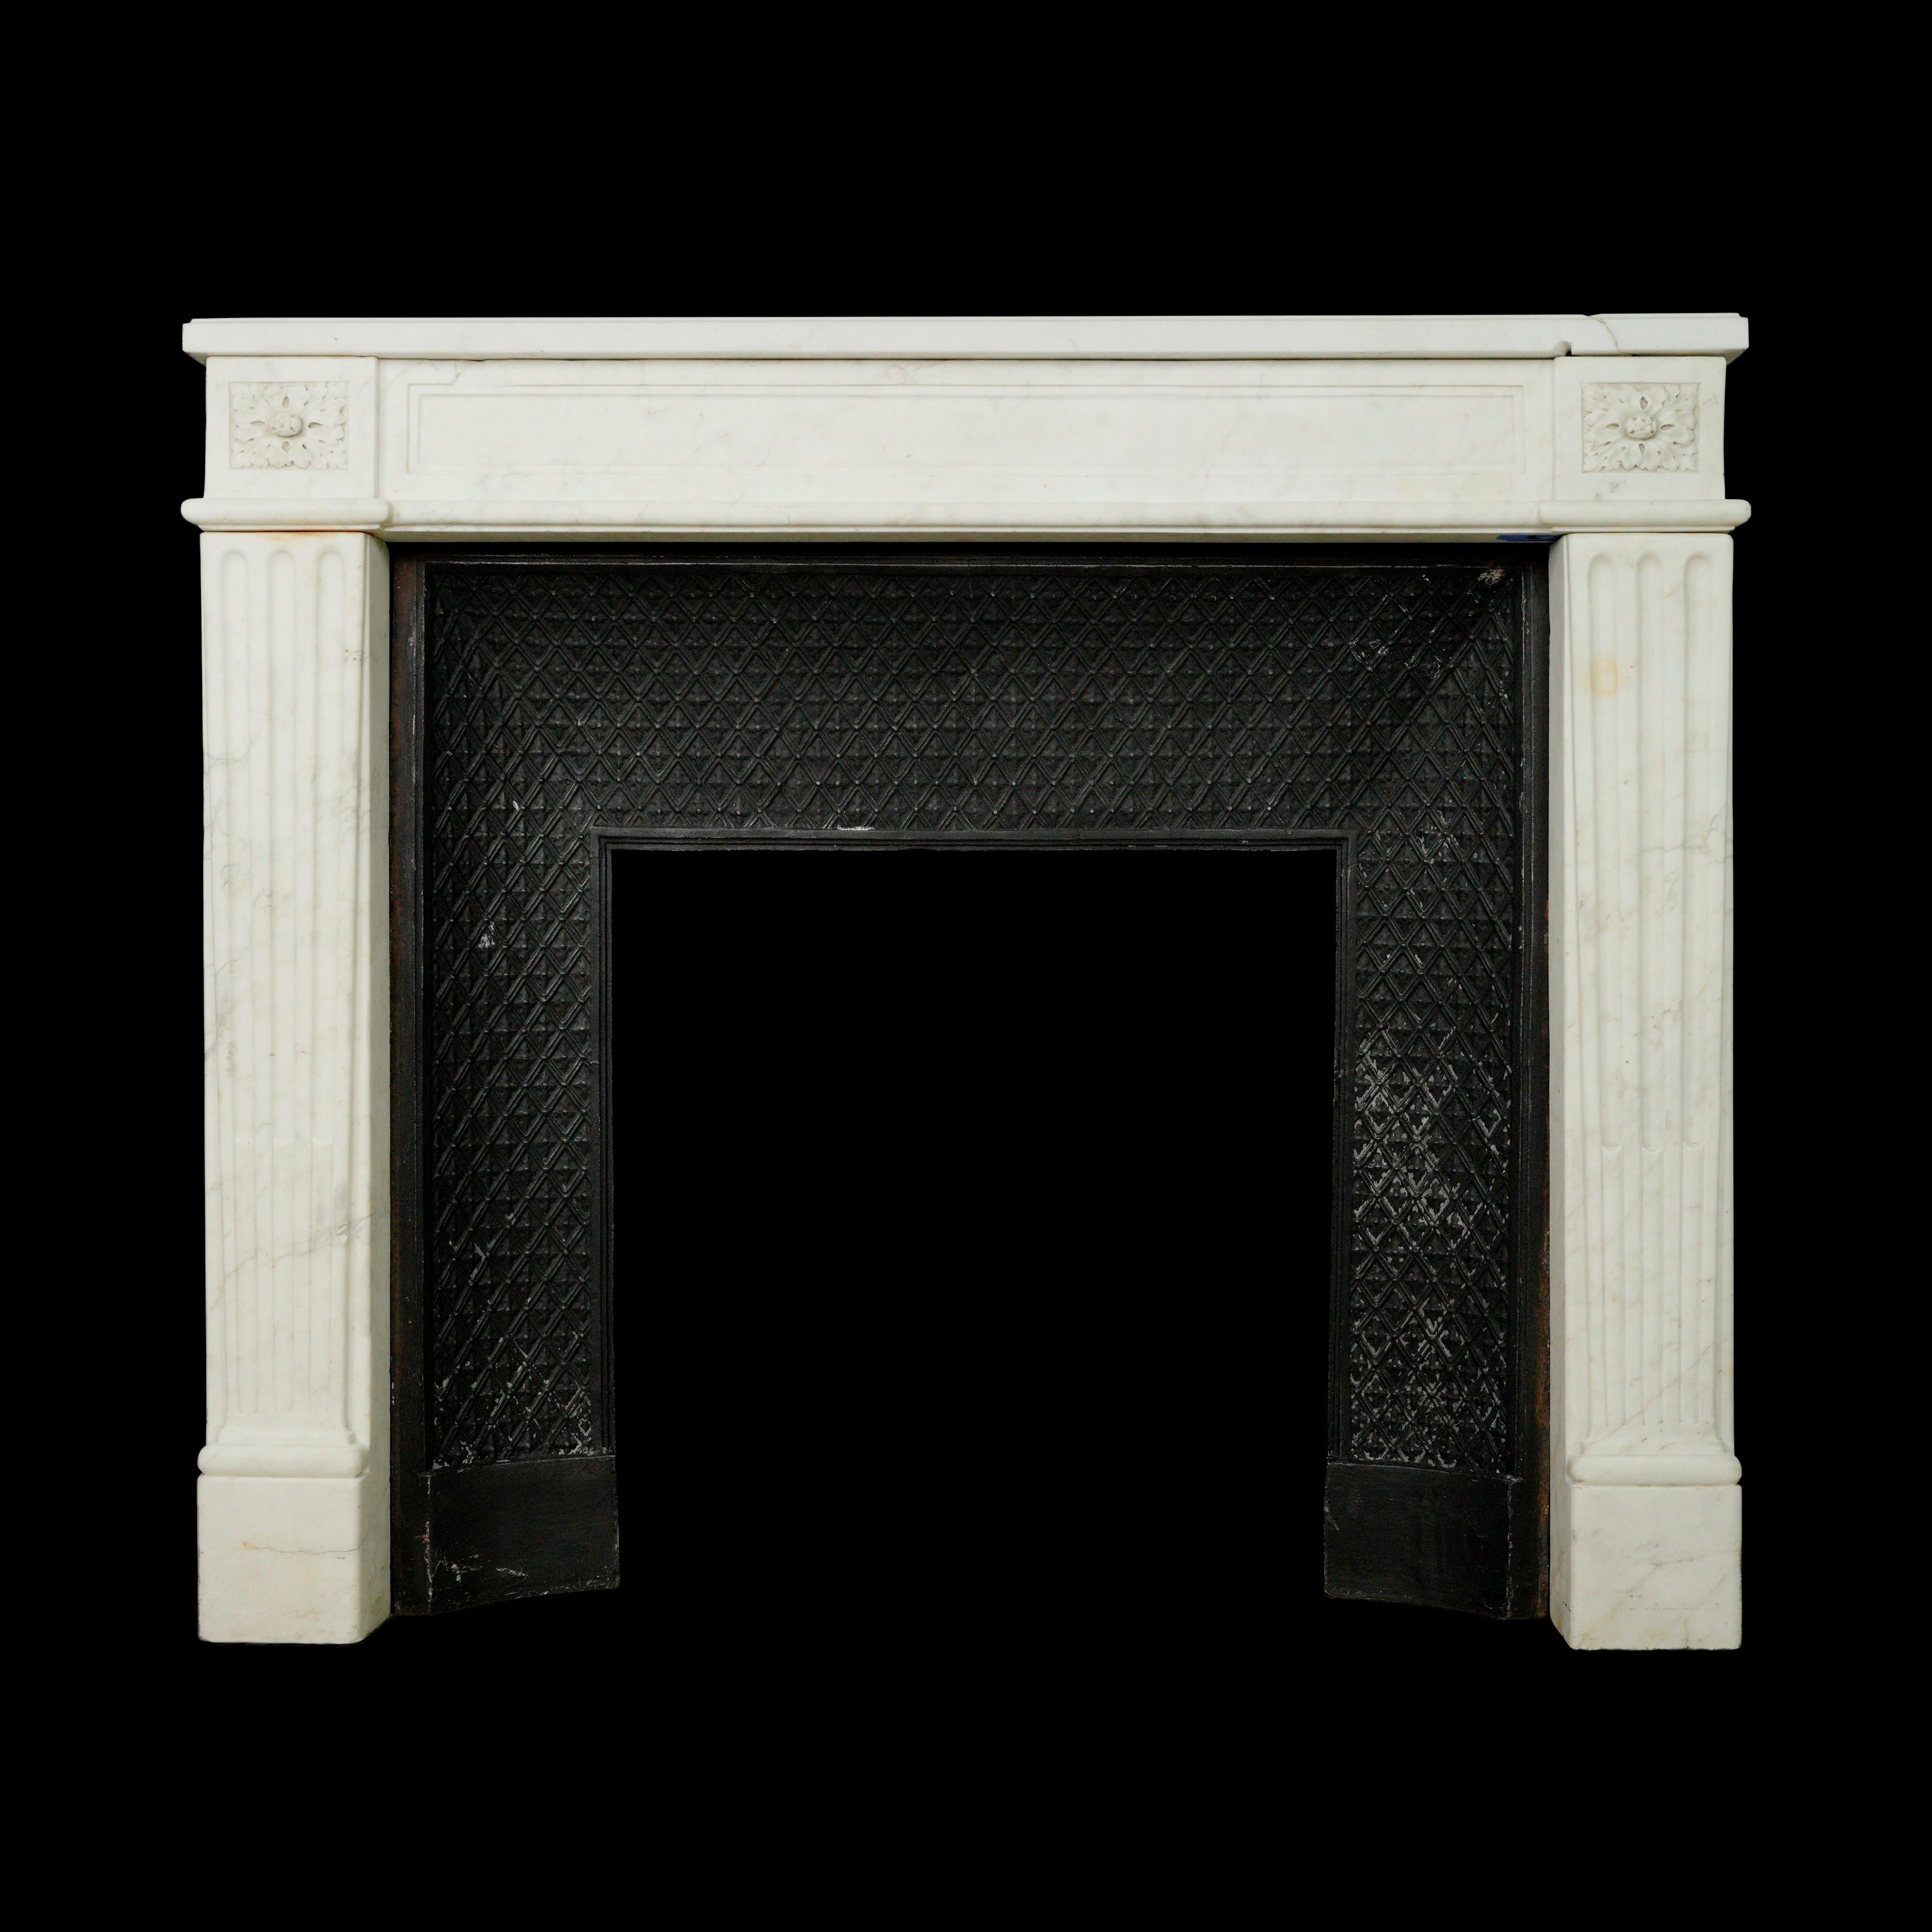 Cette pièce provient d'une succession estimée située à Greenwich, Connecticut. La cheminée en marbre blanc, de style Louis XVI, est dotée d'un rétrécissement en fonte, ce qui contribue à son aspect classique et raffiné. Toutefois, il a subi une